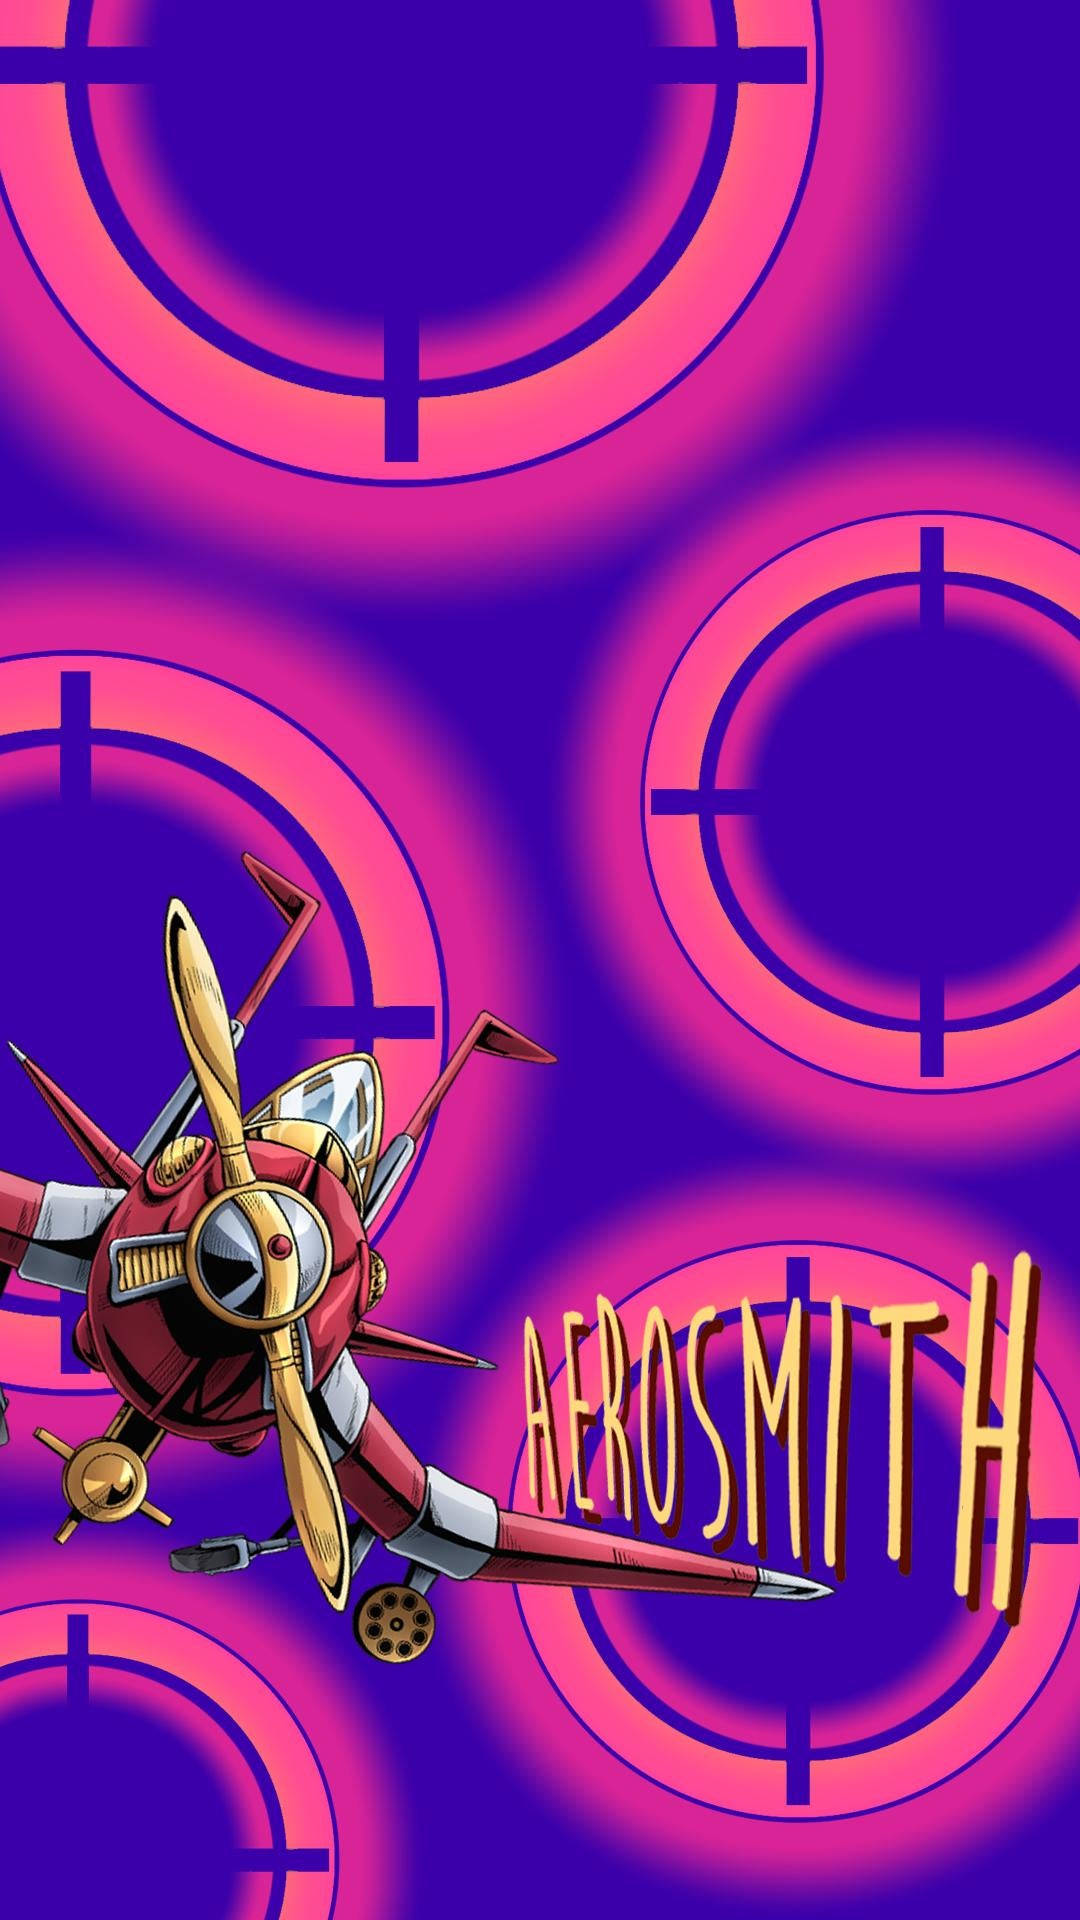 Aerosmith Rock Band Fan Art Wallpaper